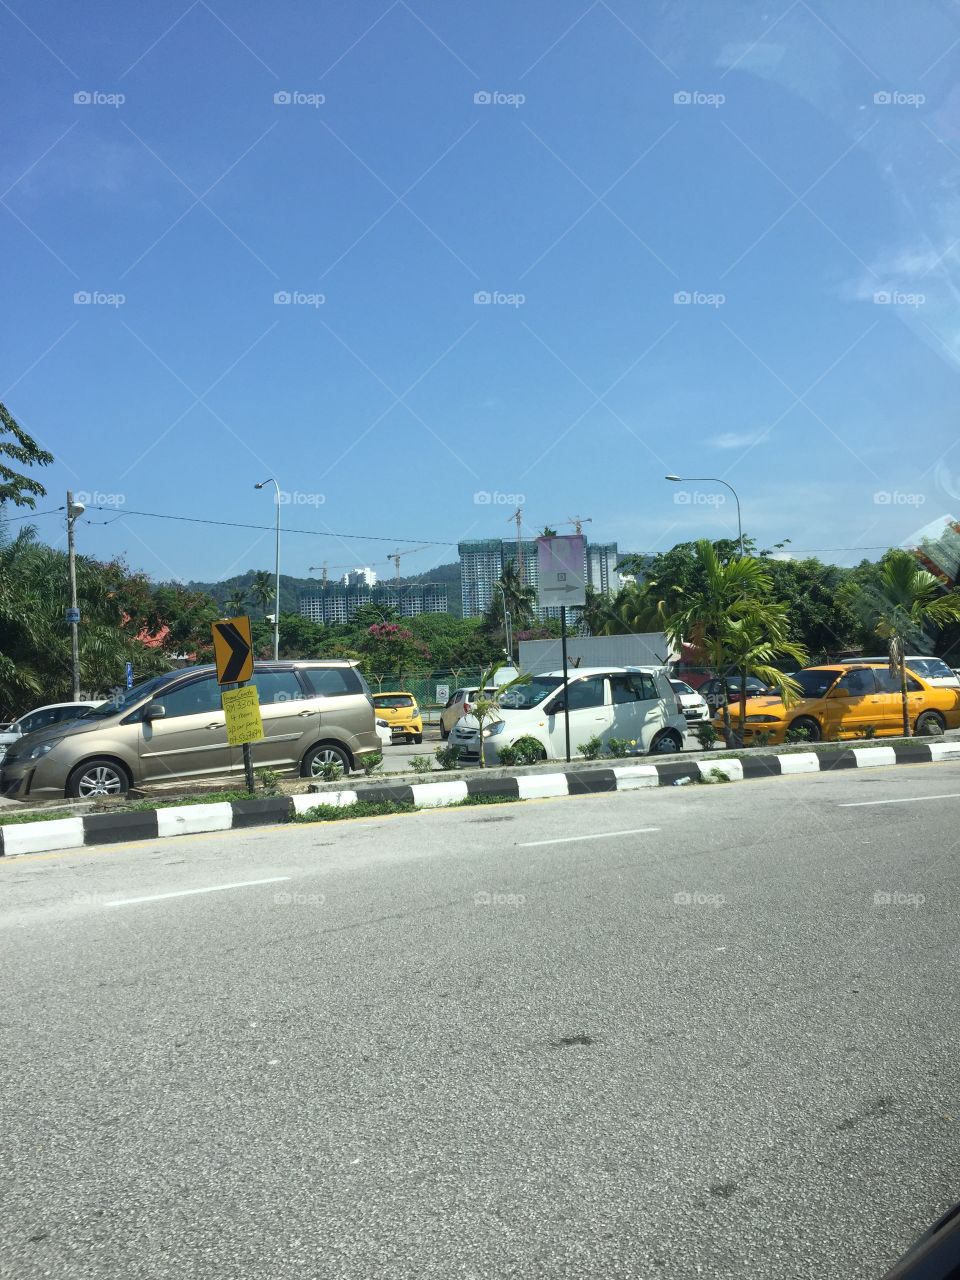 Car park at penang airport